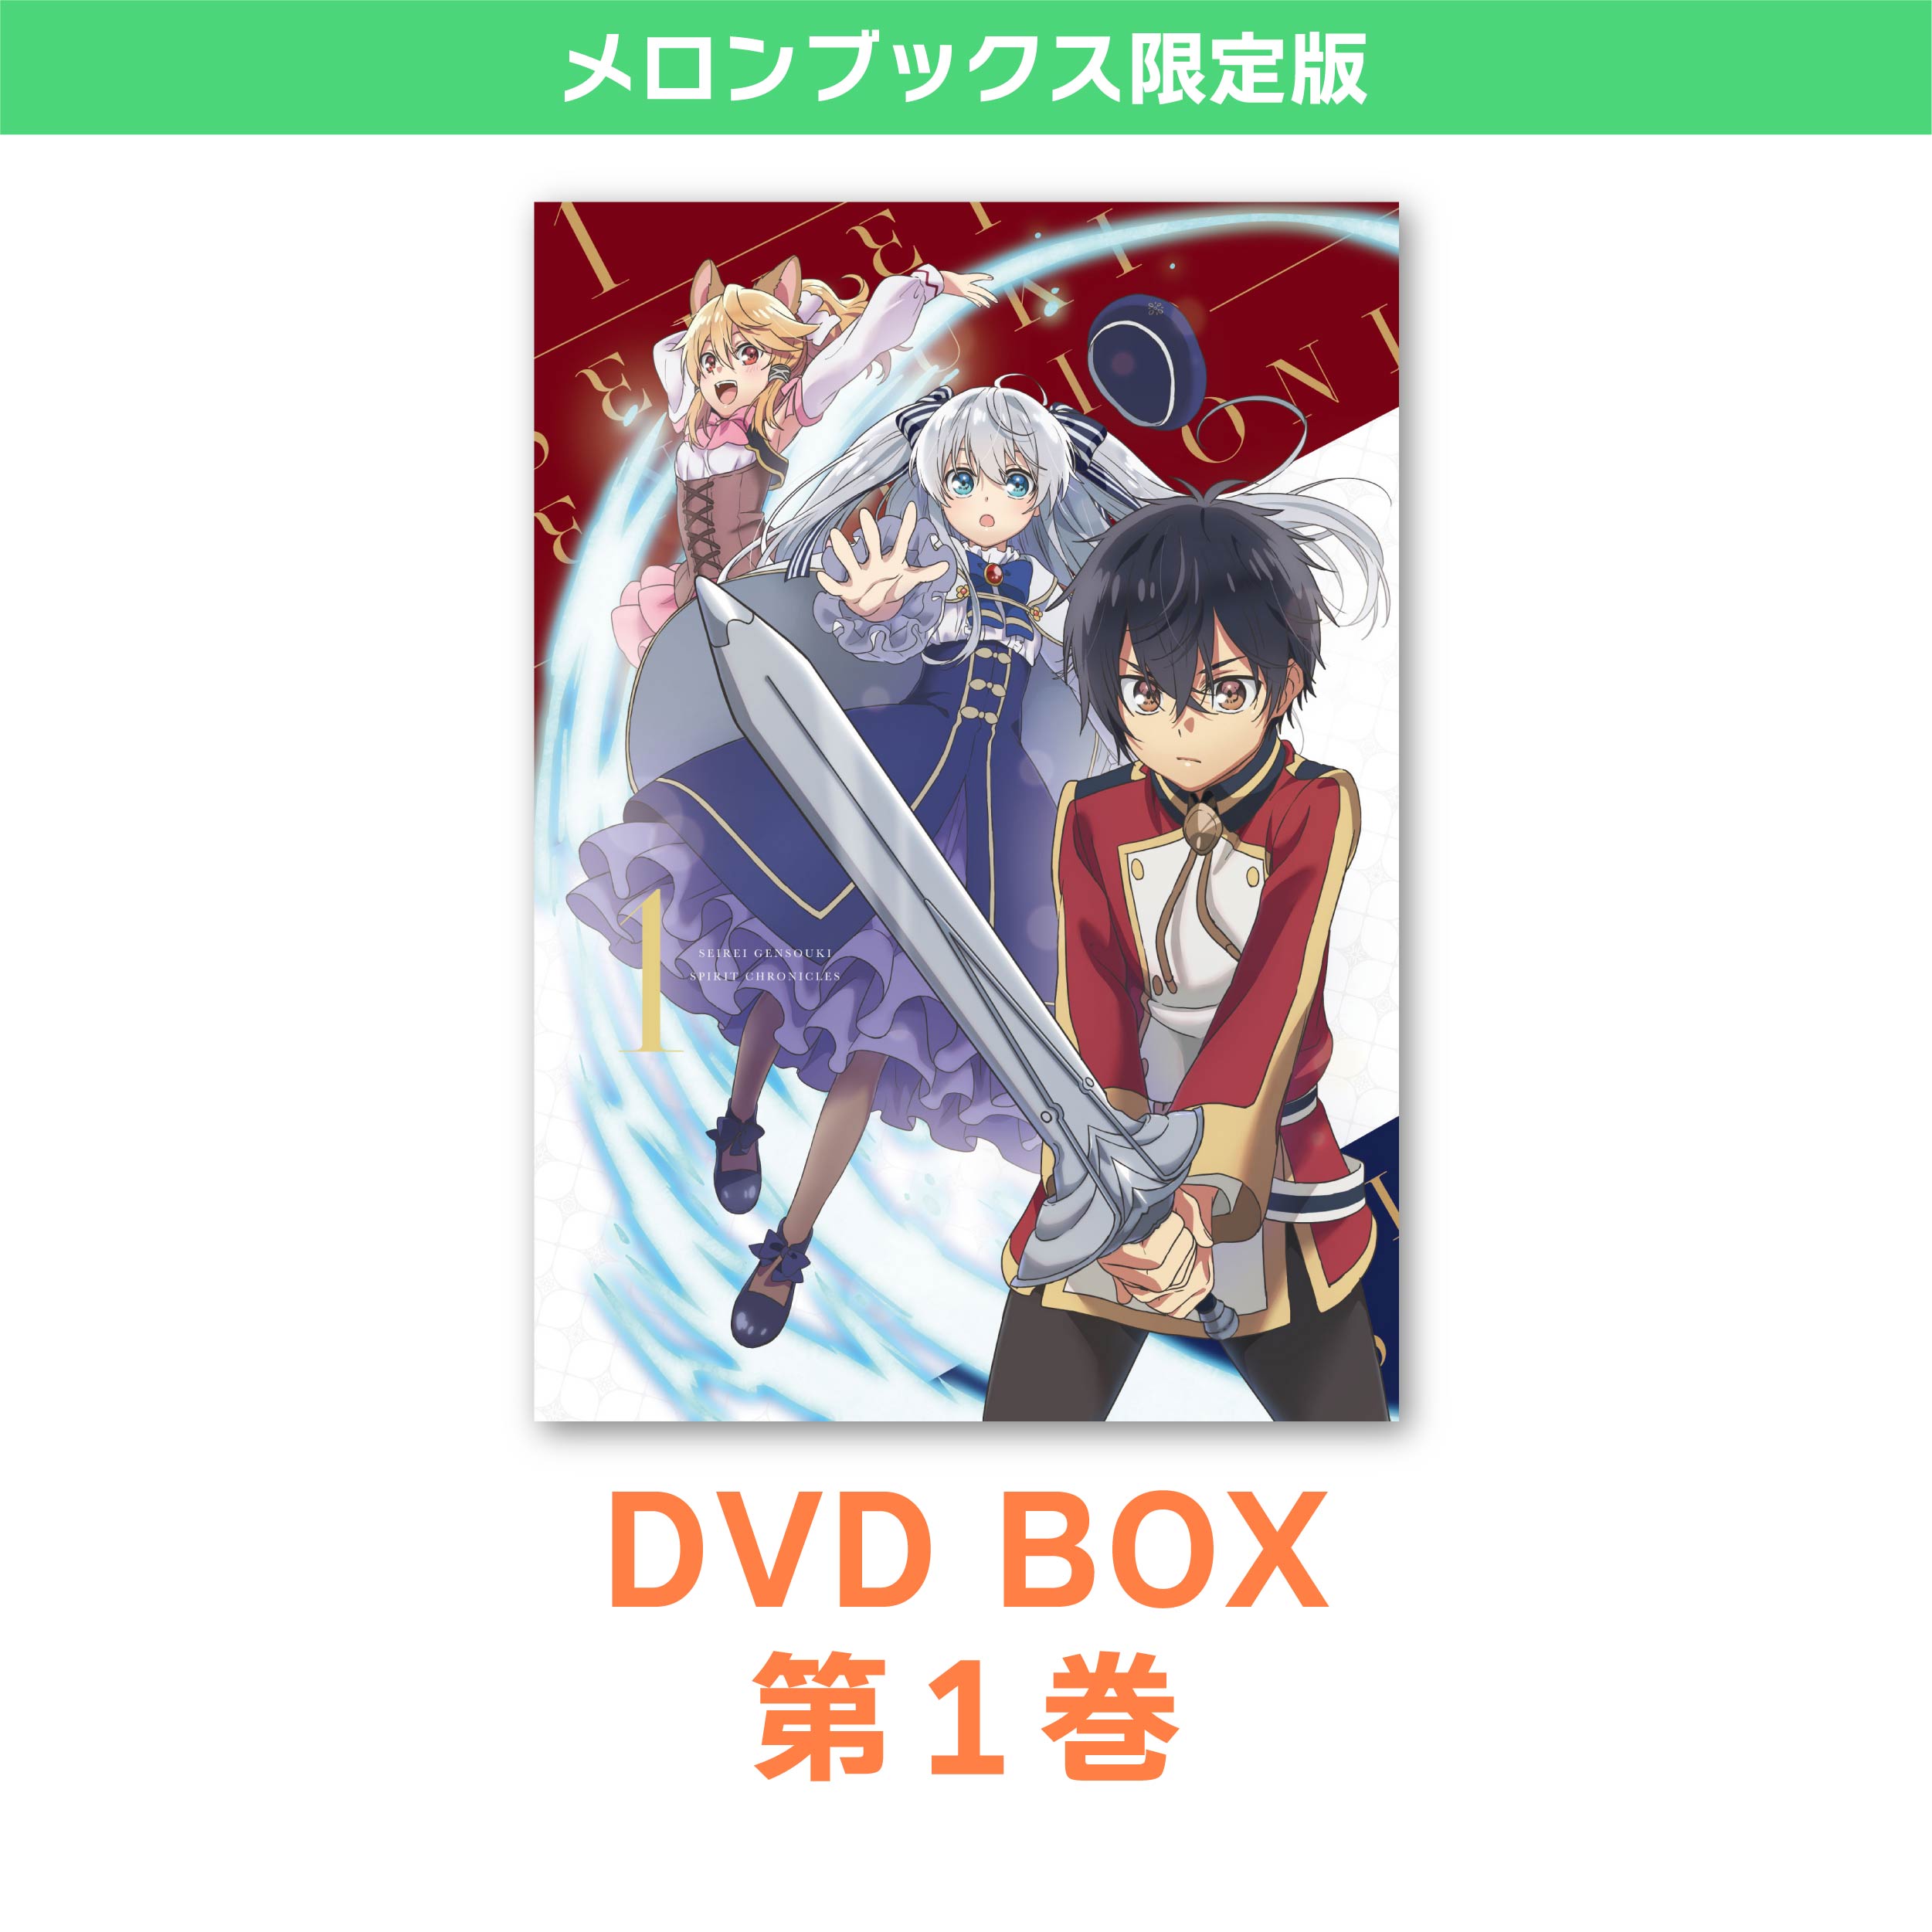 精霊幻想記 DVD BOX 第1巻 メロンブックス限定版 / ハピネット・ピクチャーズ